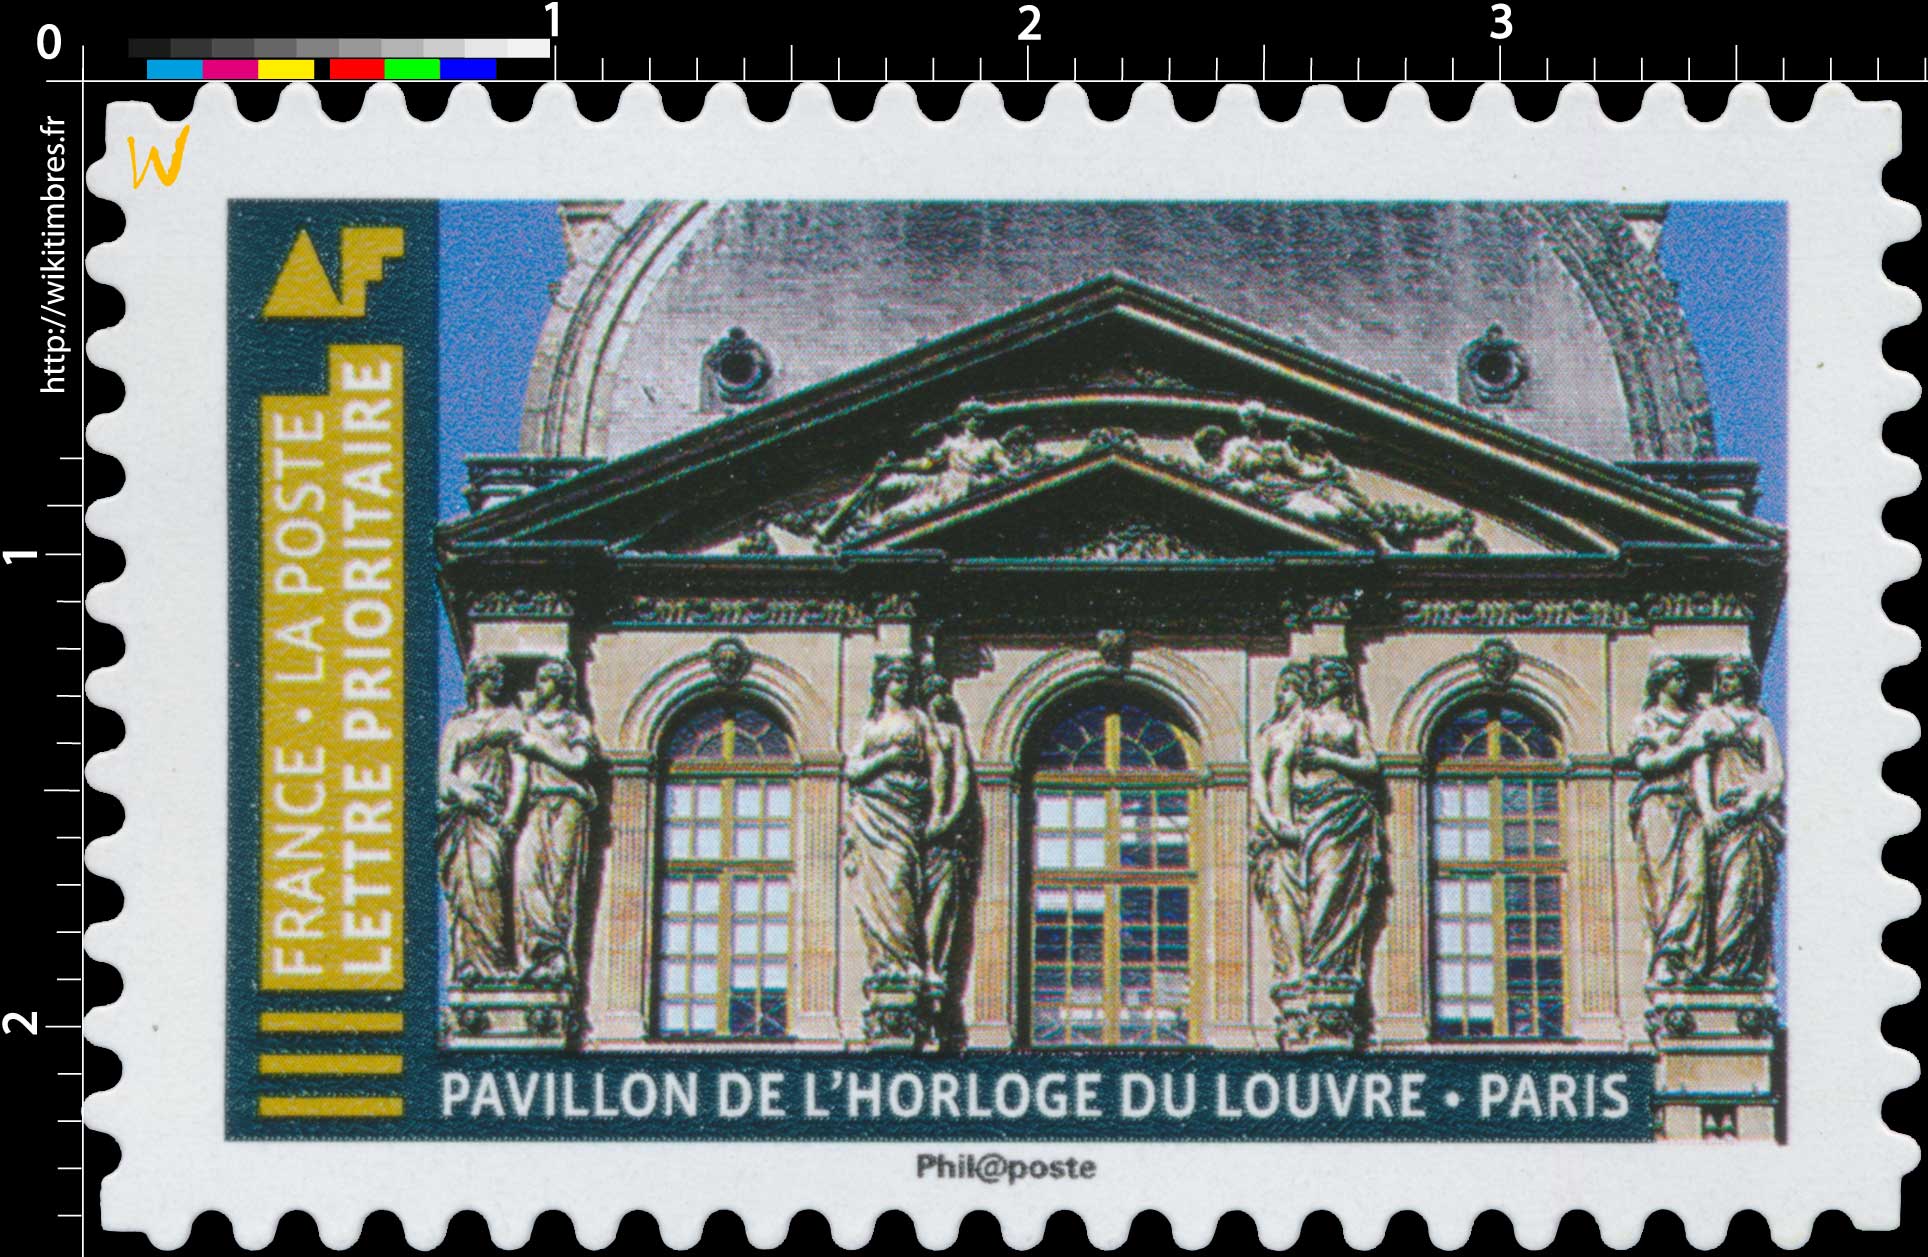 2019 Pavillon de l'horloge du Louvre - Paris